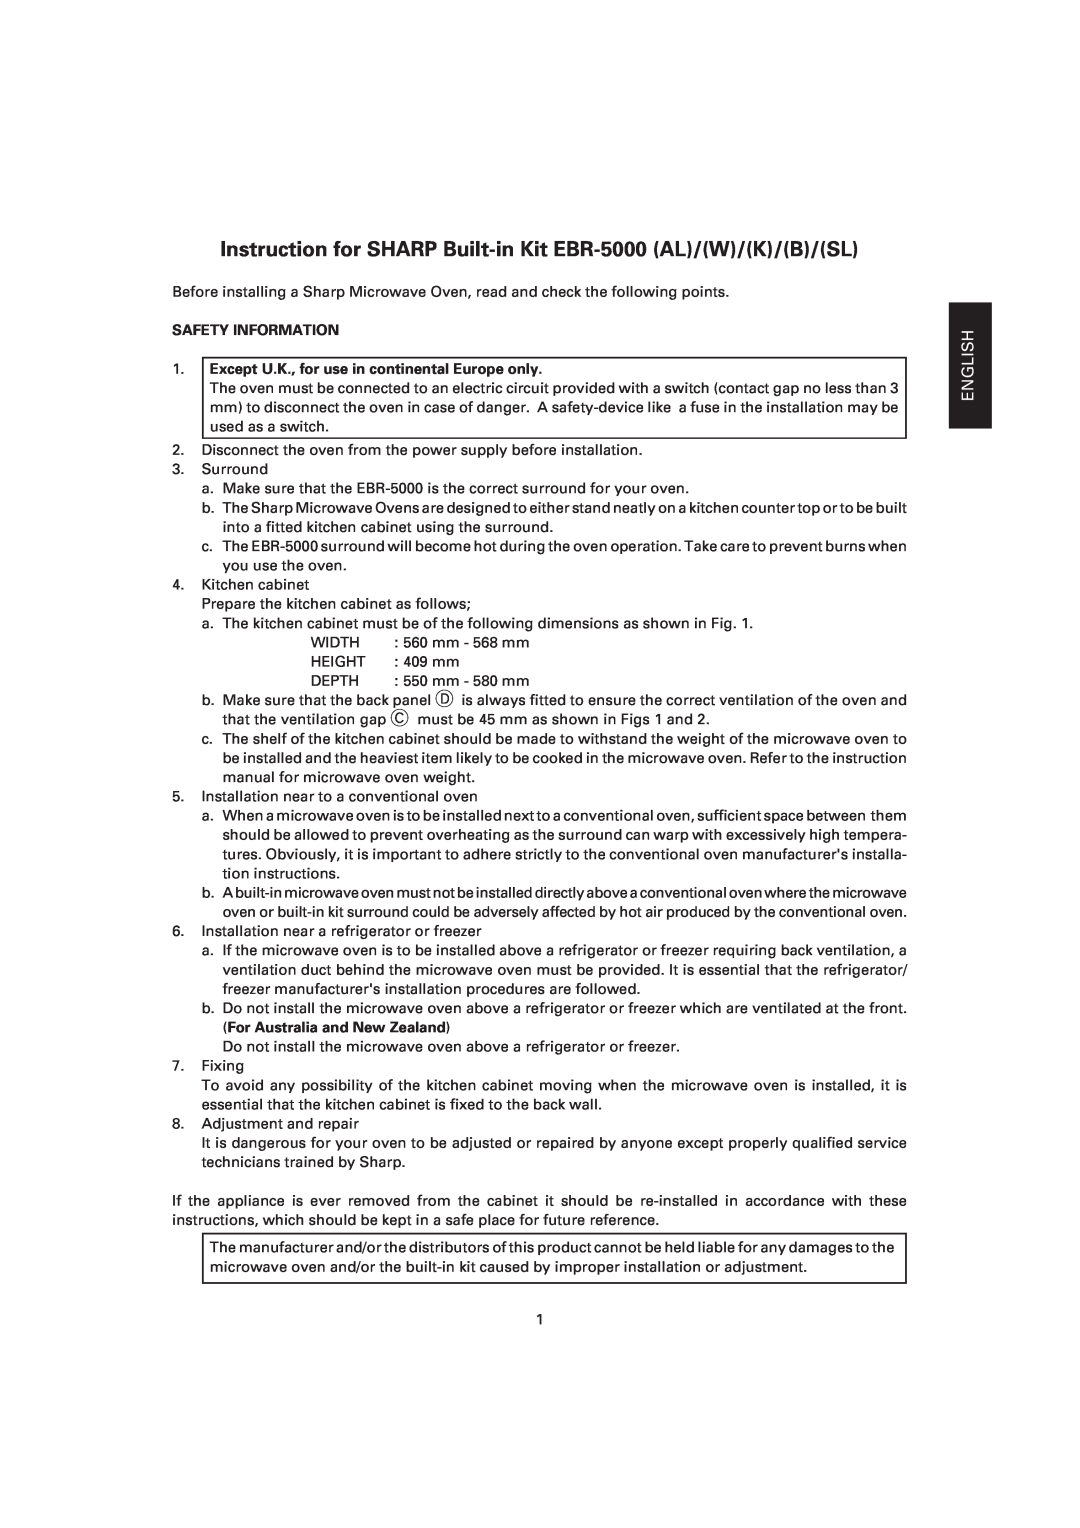 Sharp EBR-5000 dimensions English Deutsch Français Nederlands Italiano, Español, Safety Information 